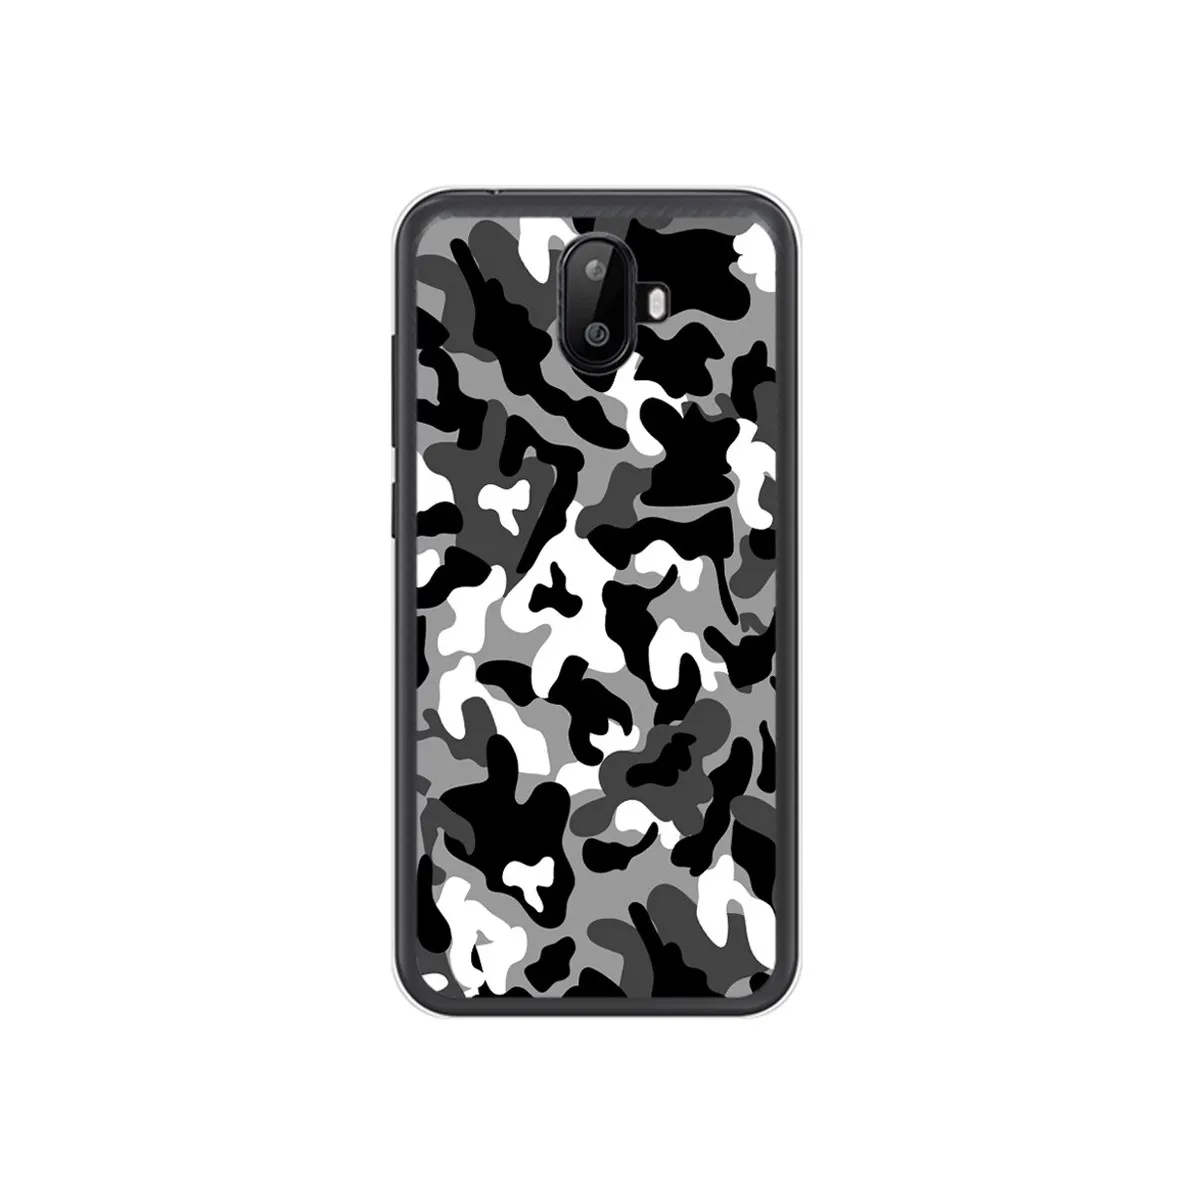 Funda Gel Tpu para Ulefone S7 / S7 Pro Diseño Snow Camuflaje Dibujos